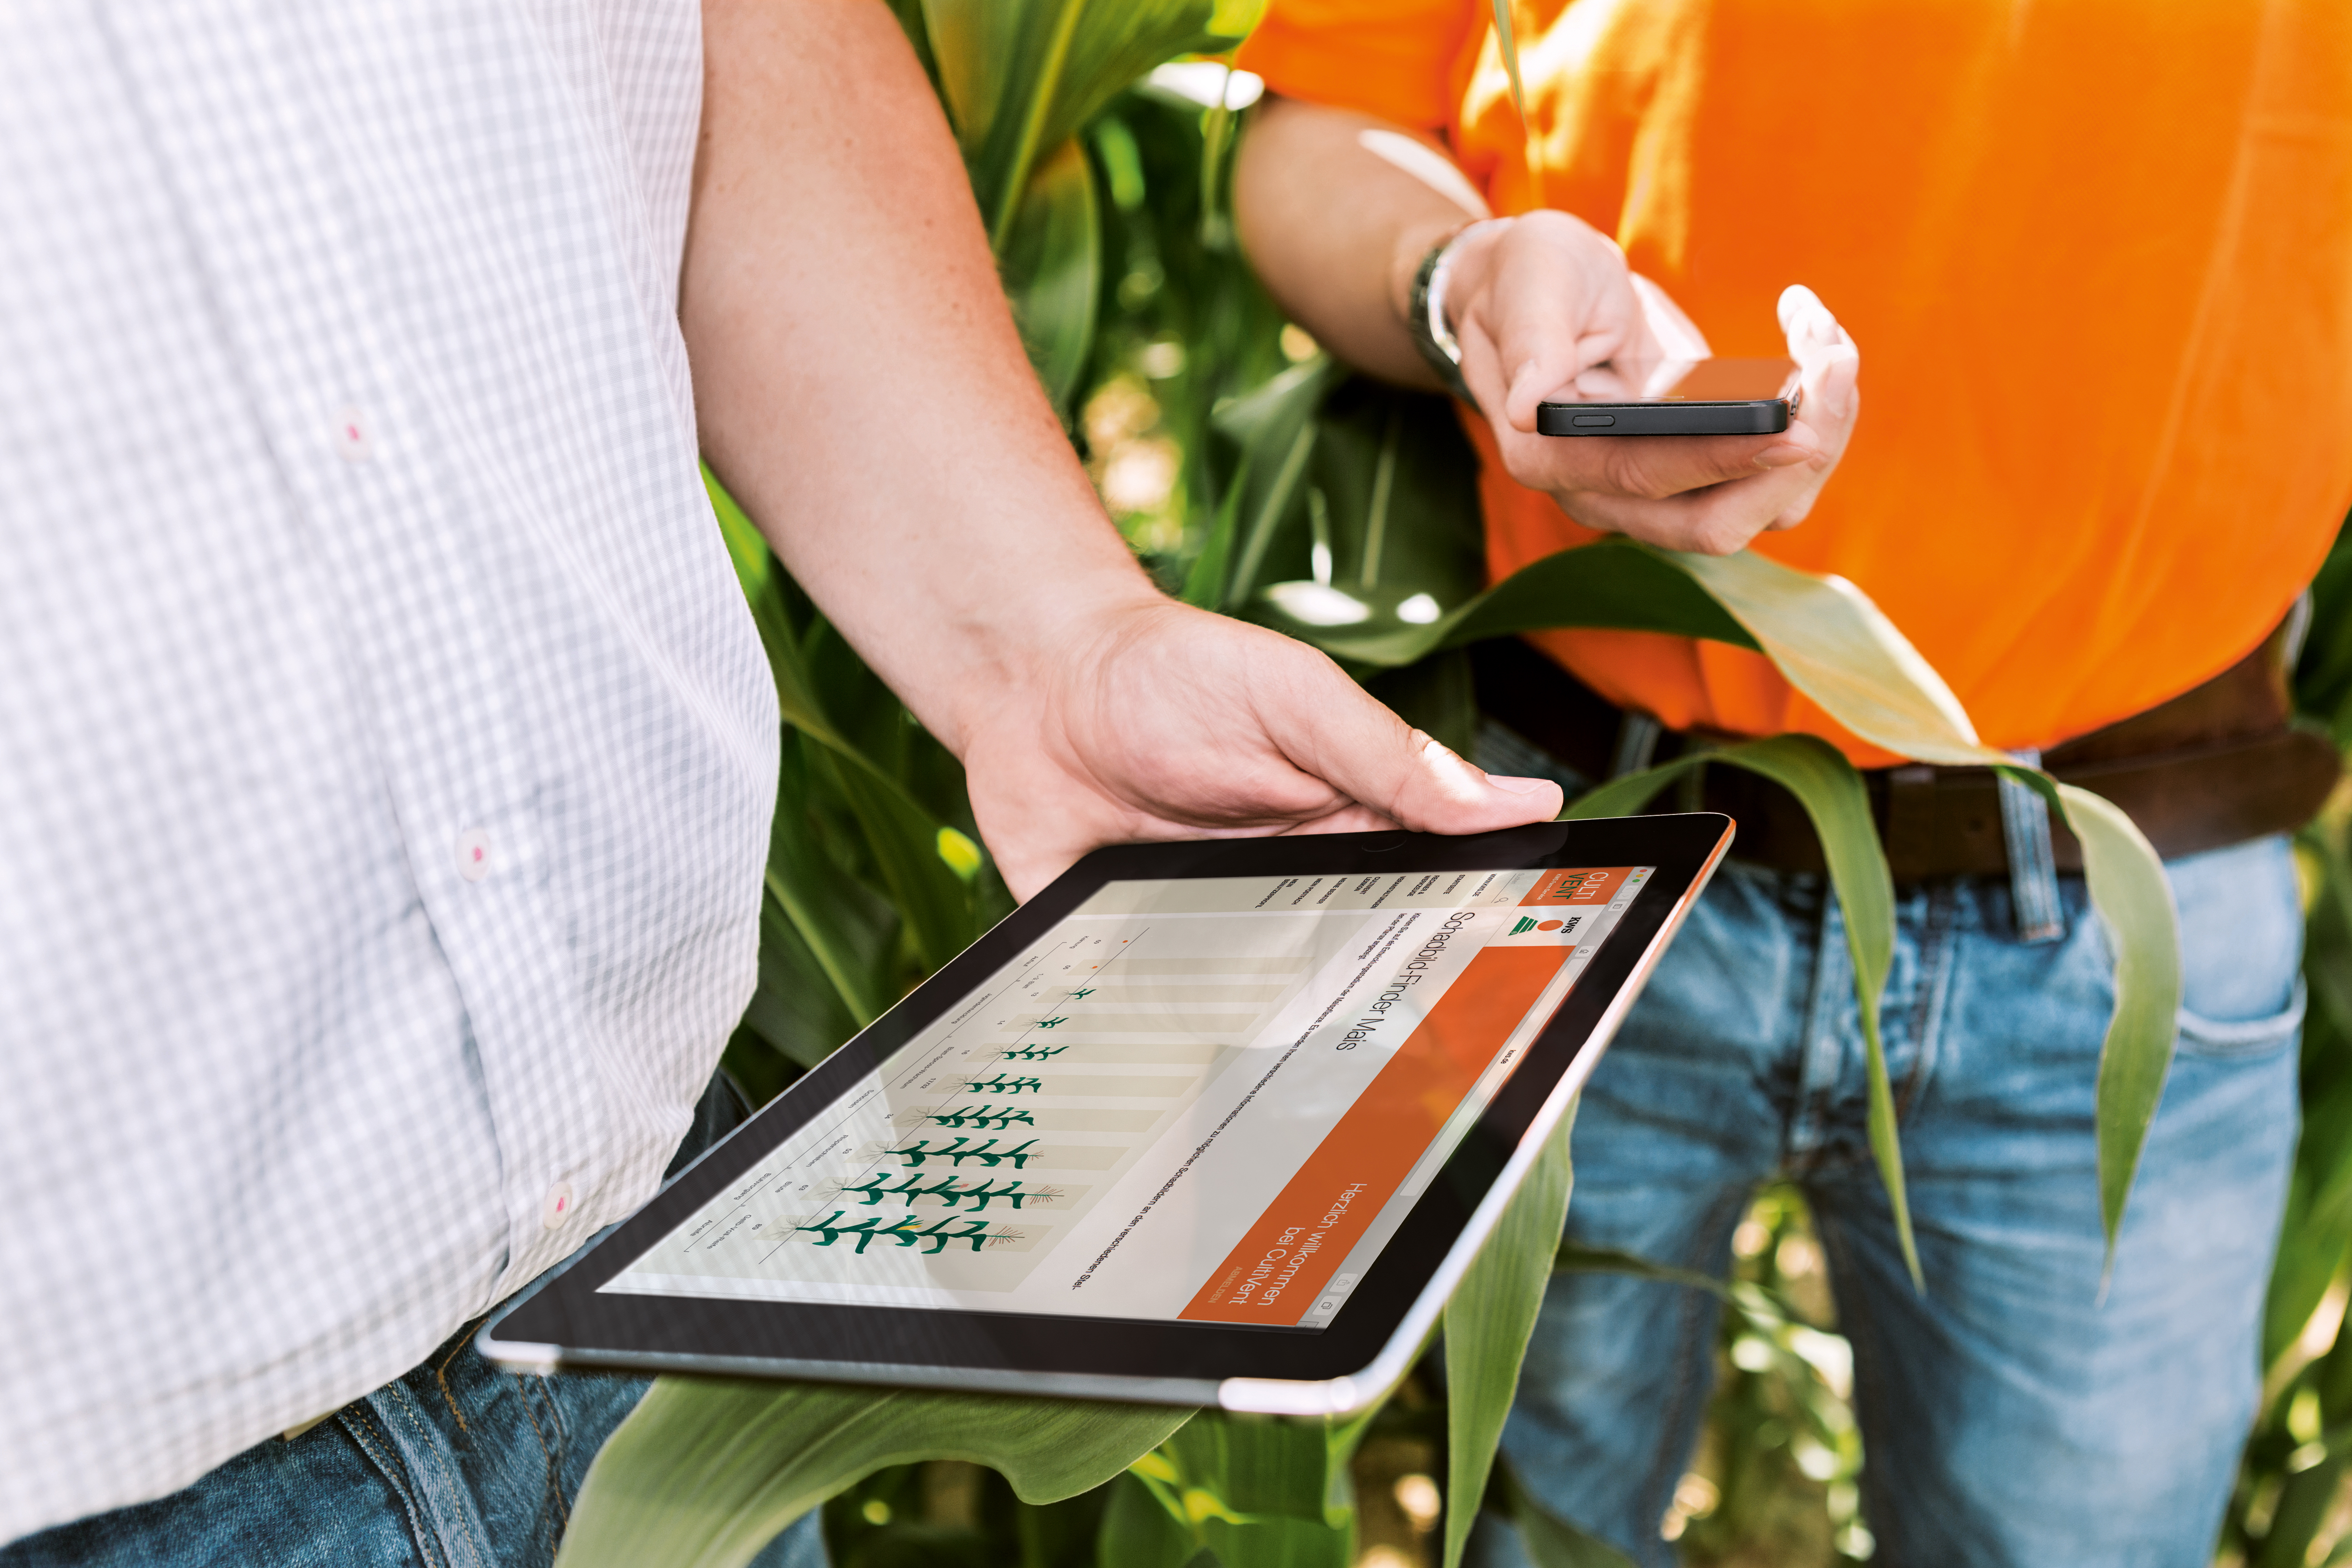 Közeli kép: két férfi áll egy okostelefonnal és egy tablettal a  kukorica mezőben